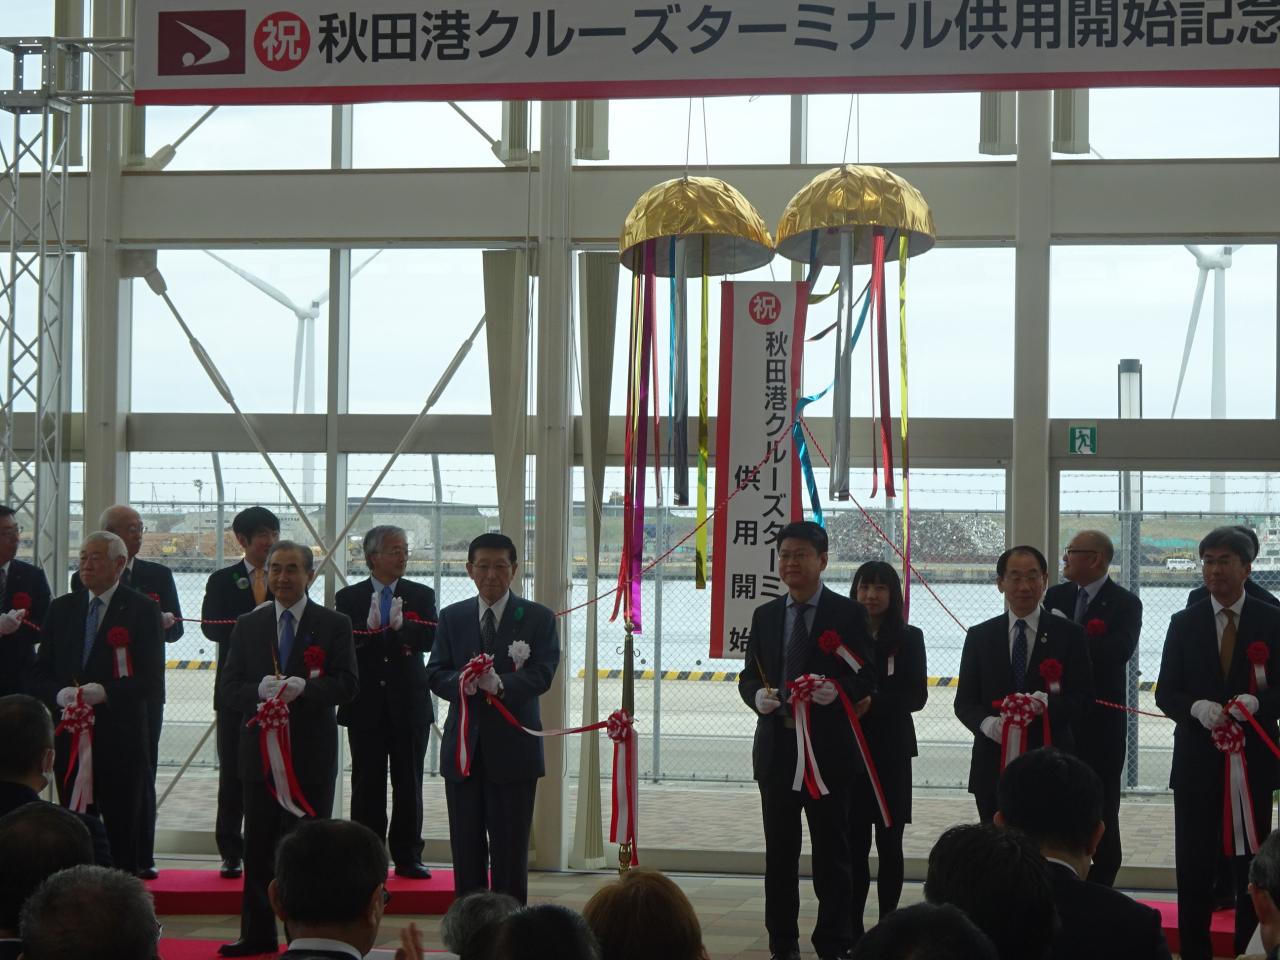 秋田港クルーズターミナル供用開始記念式典及び秋田港クルーズ列車出発式典の様子